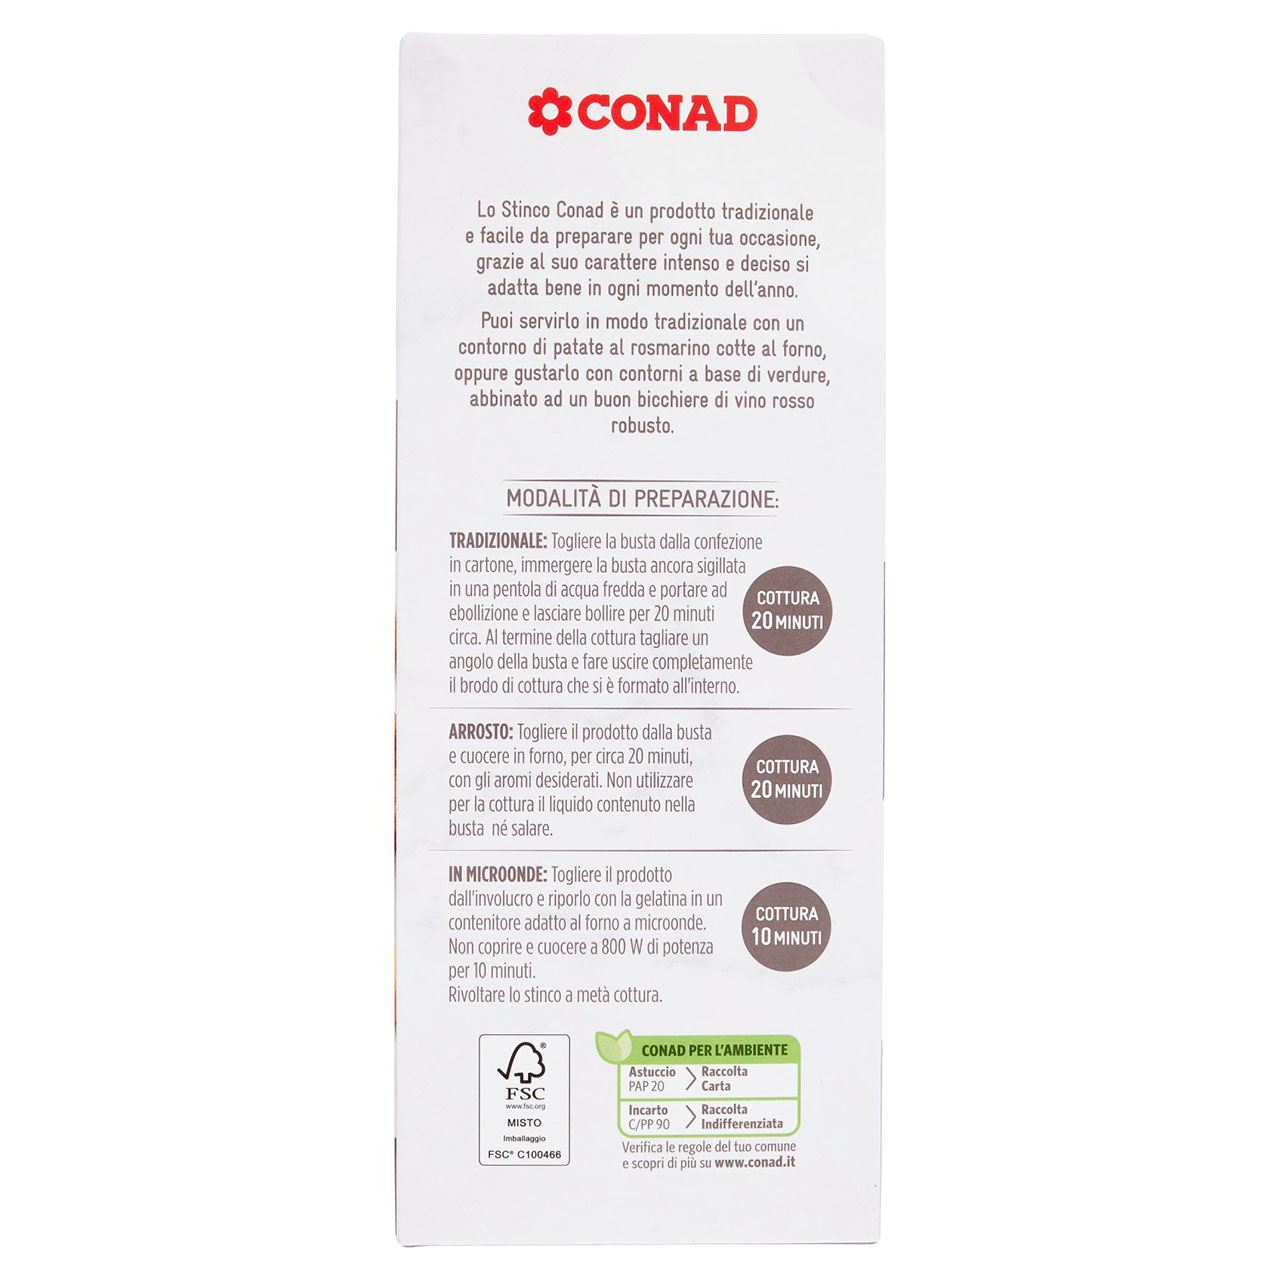 Stinco 650 g Conad in vendita online